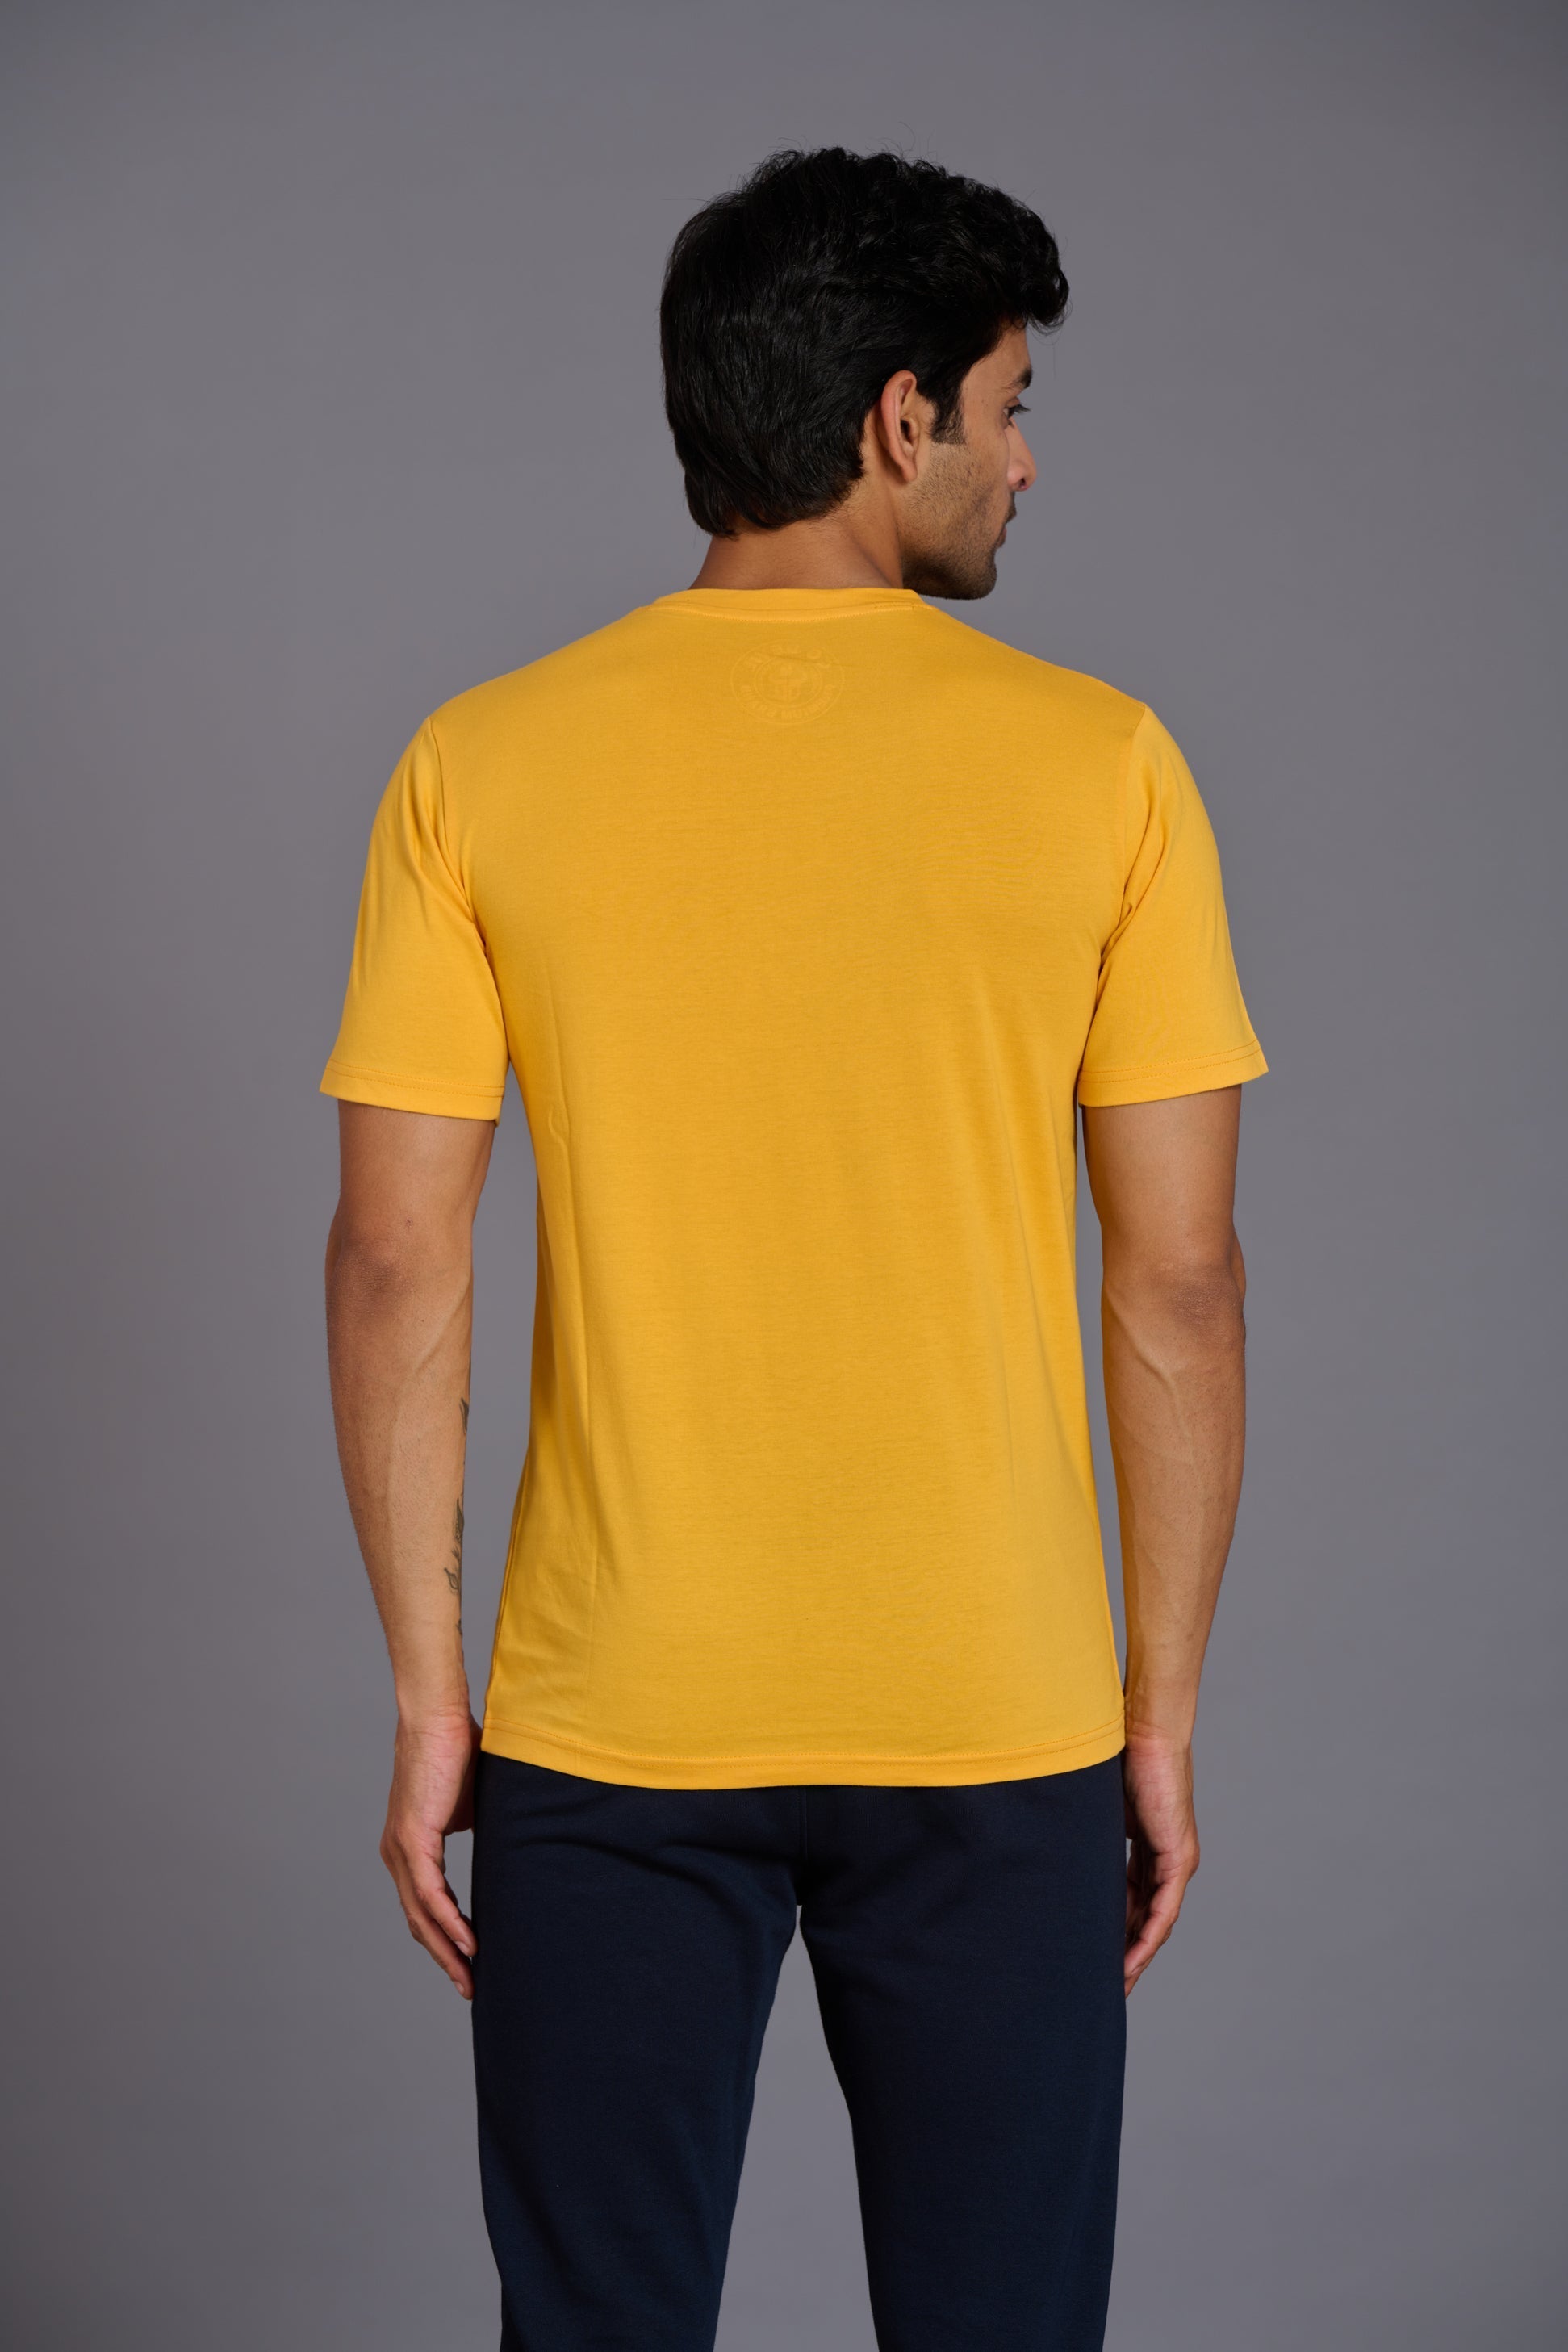 Go Devils Originals Yellowish T-Shirt for Men